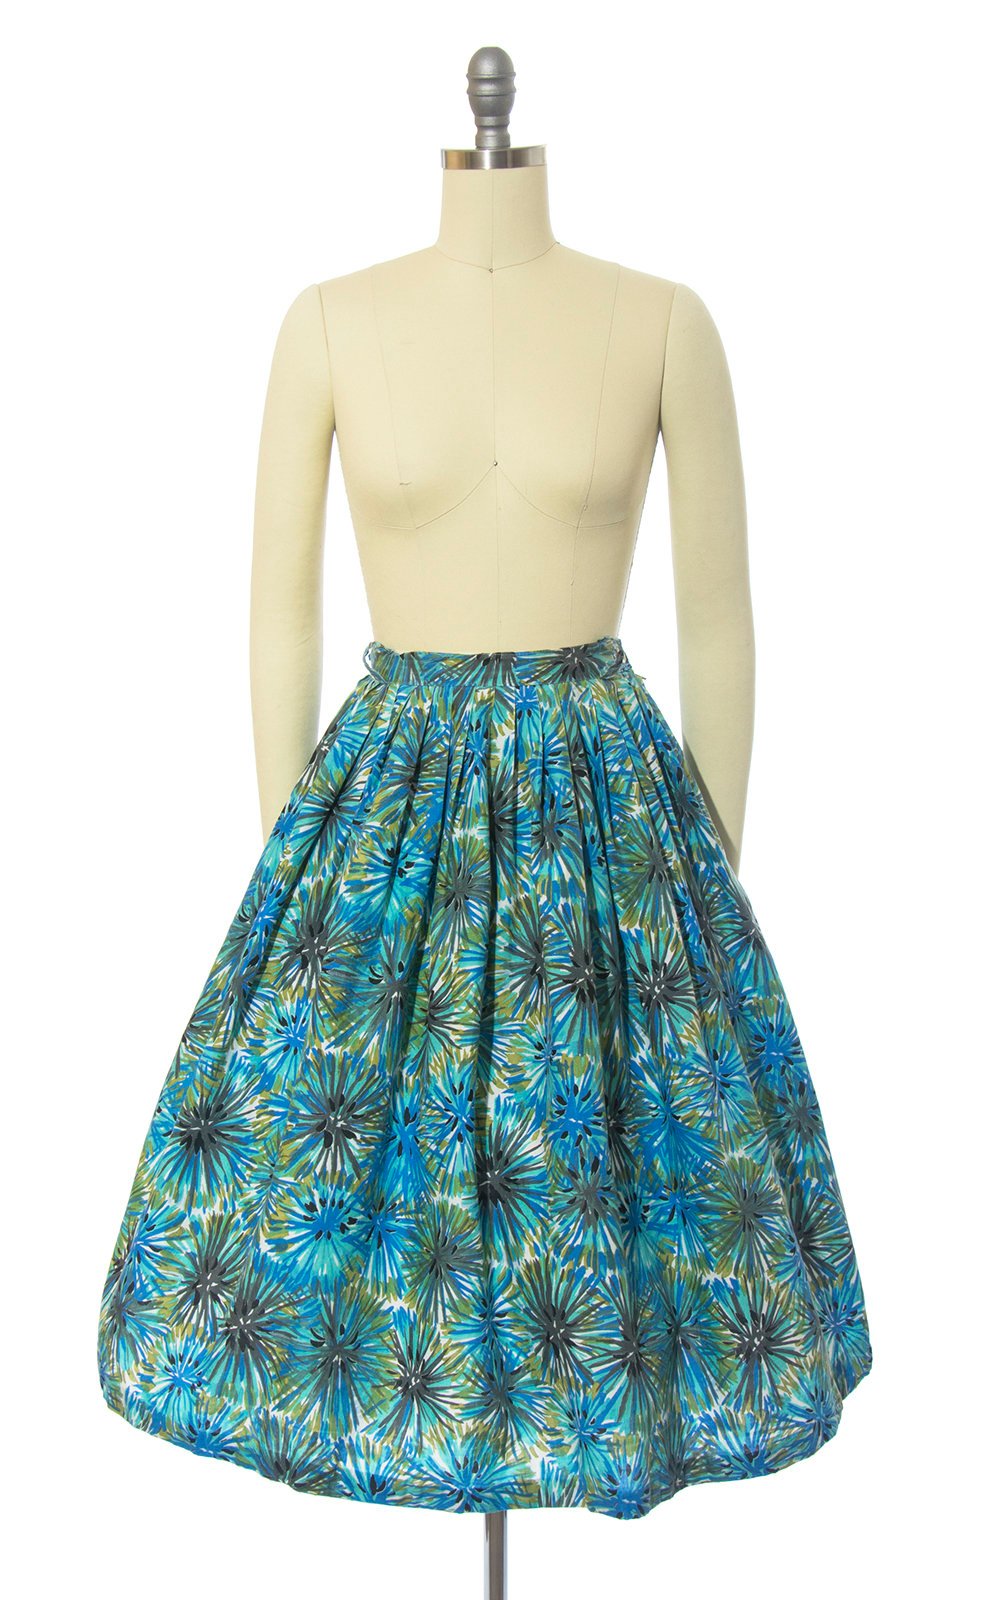 Vintage 1950s Skirt | 50s Dandelion Fireworks Print Cotton Blue Green Full Swing Skirt (small)